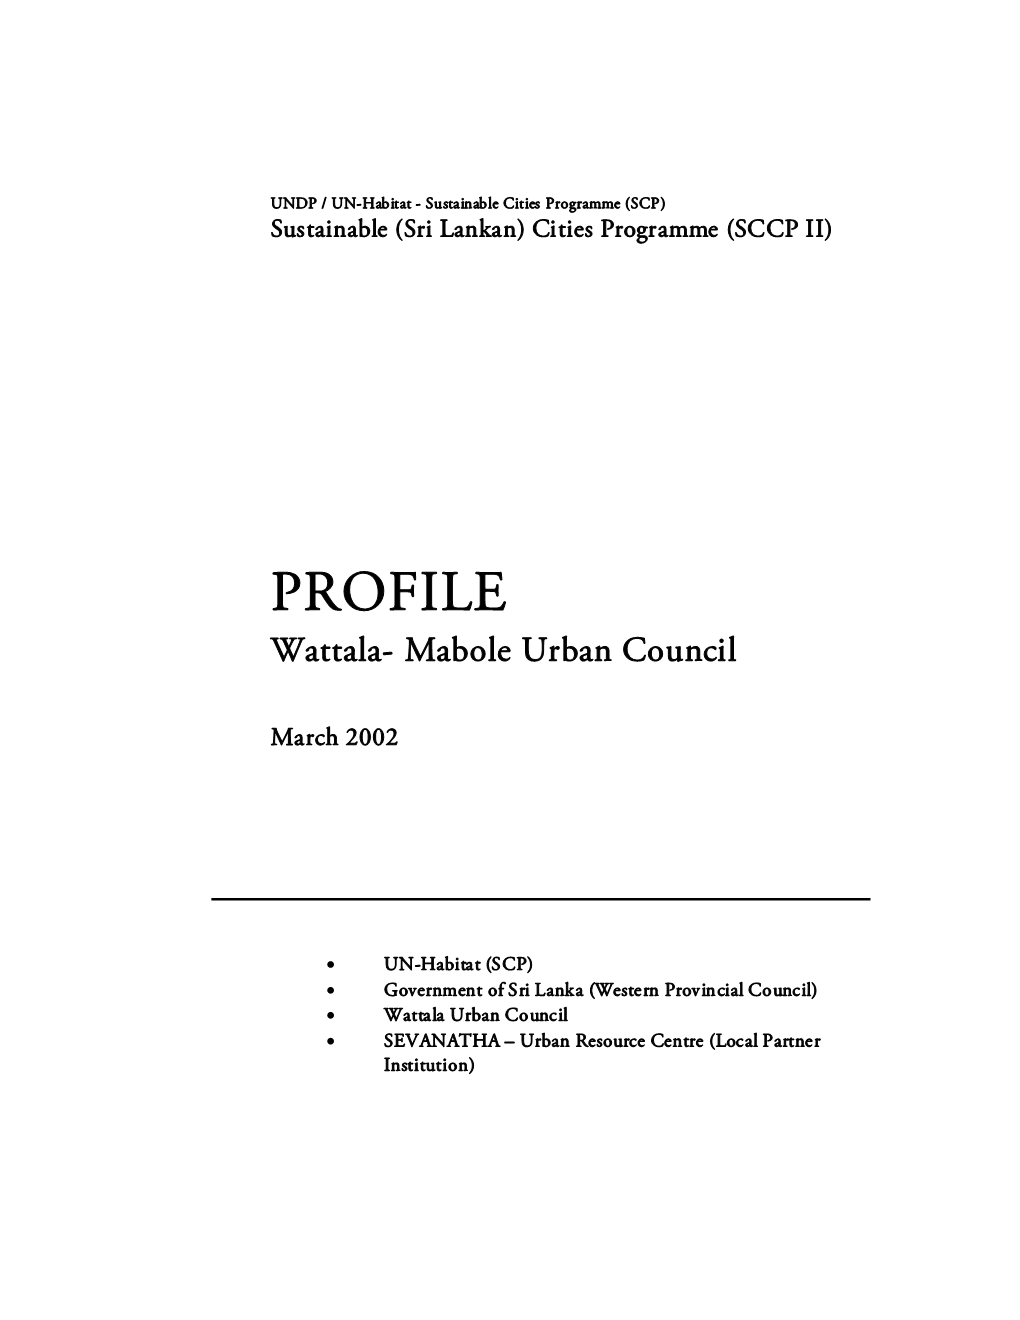 Wattala- Mabole Urban Council